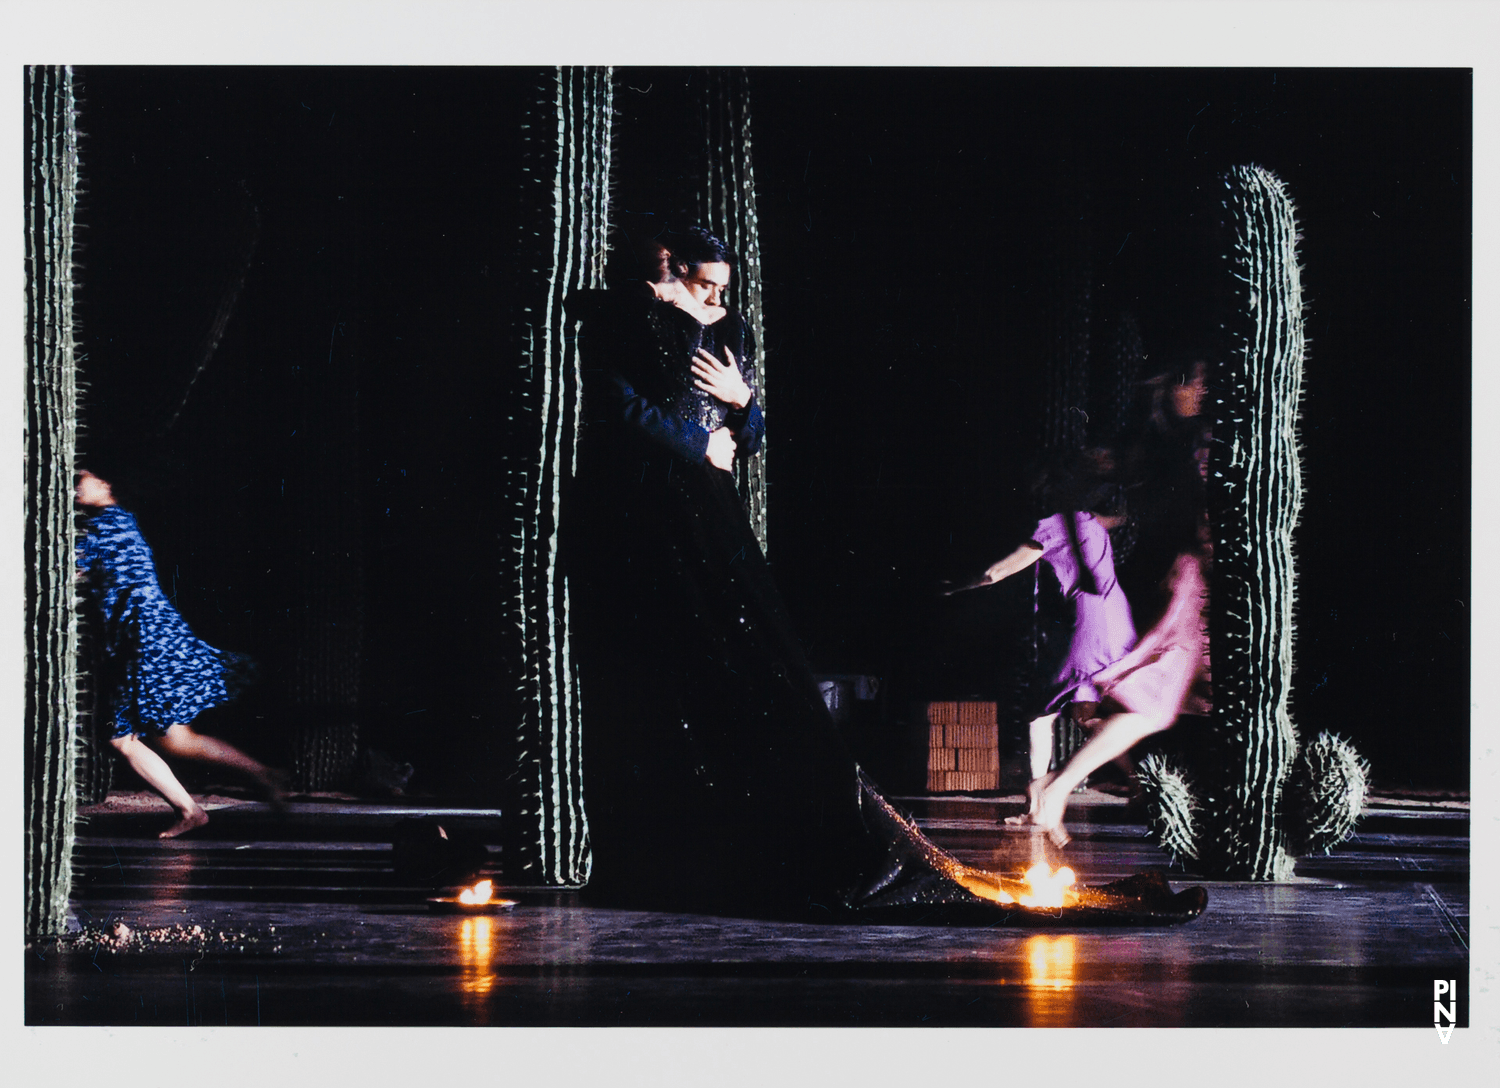 Kenji Takagi and Héléna Pikon in “Ahnen” by Pina Bausch